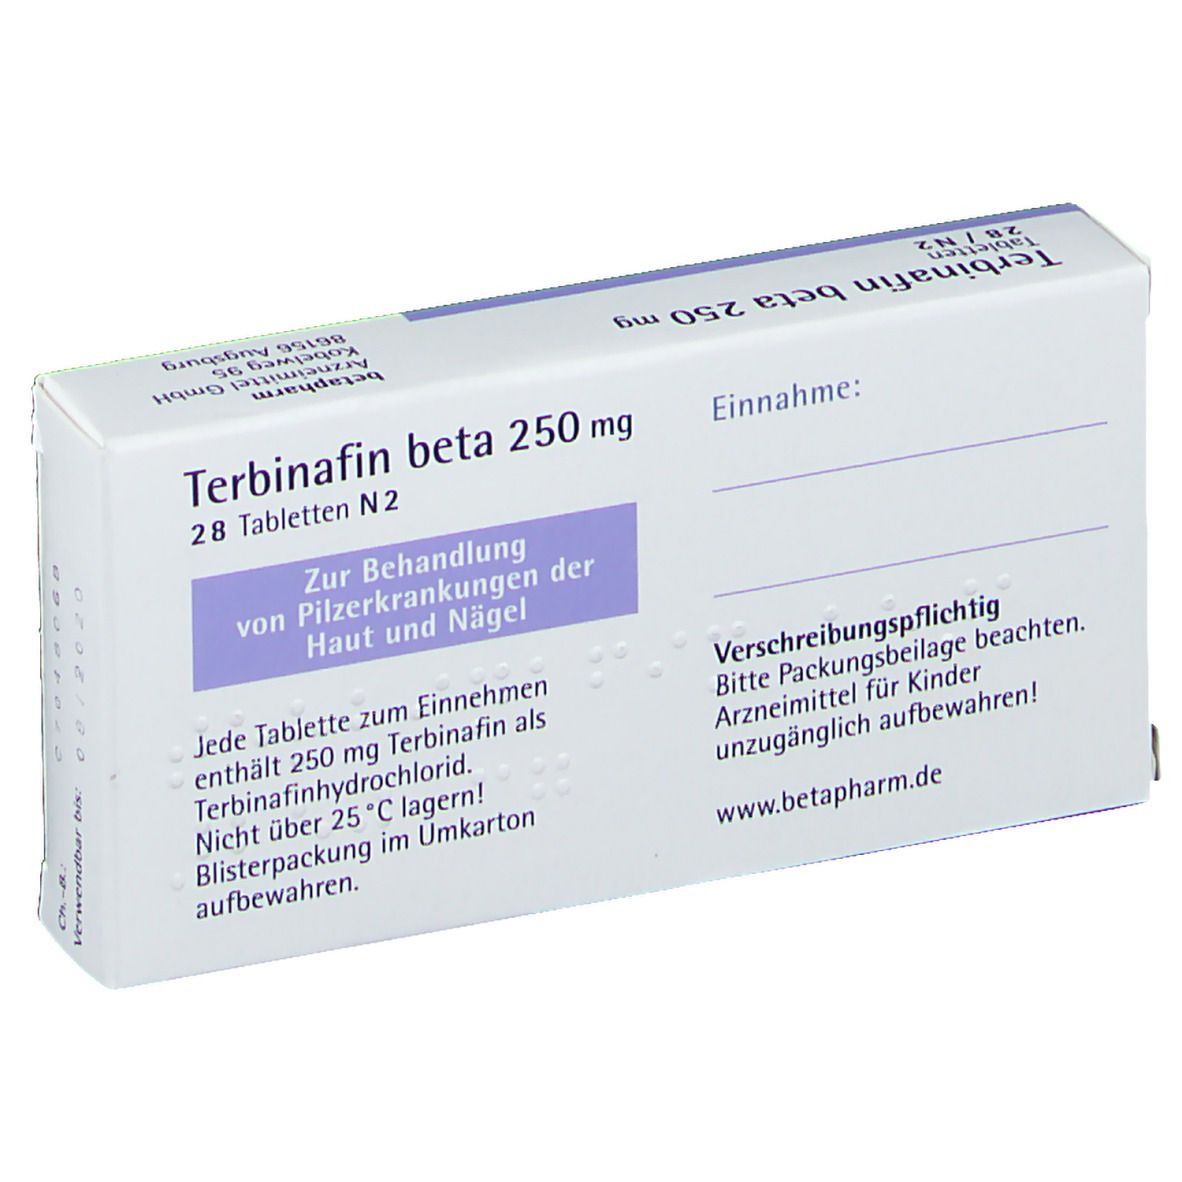 Terbinafin beta 250 mg